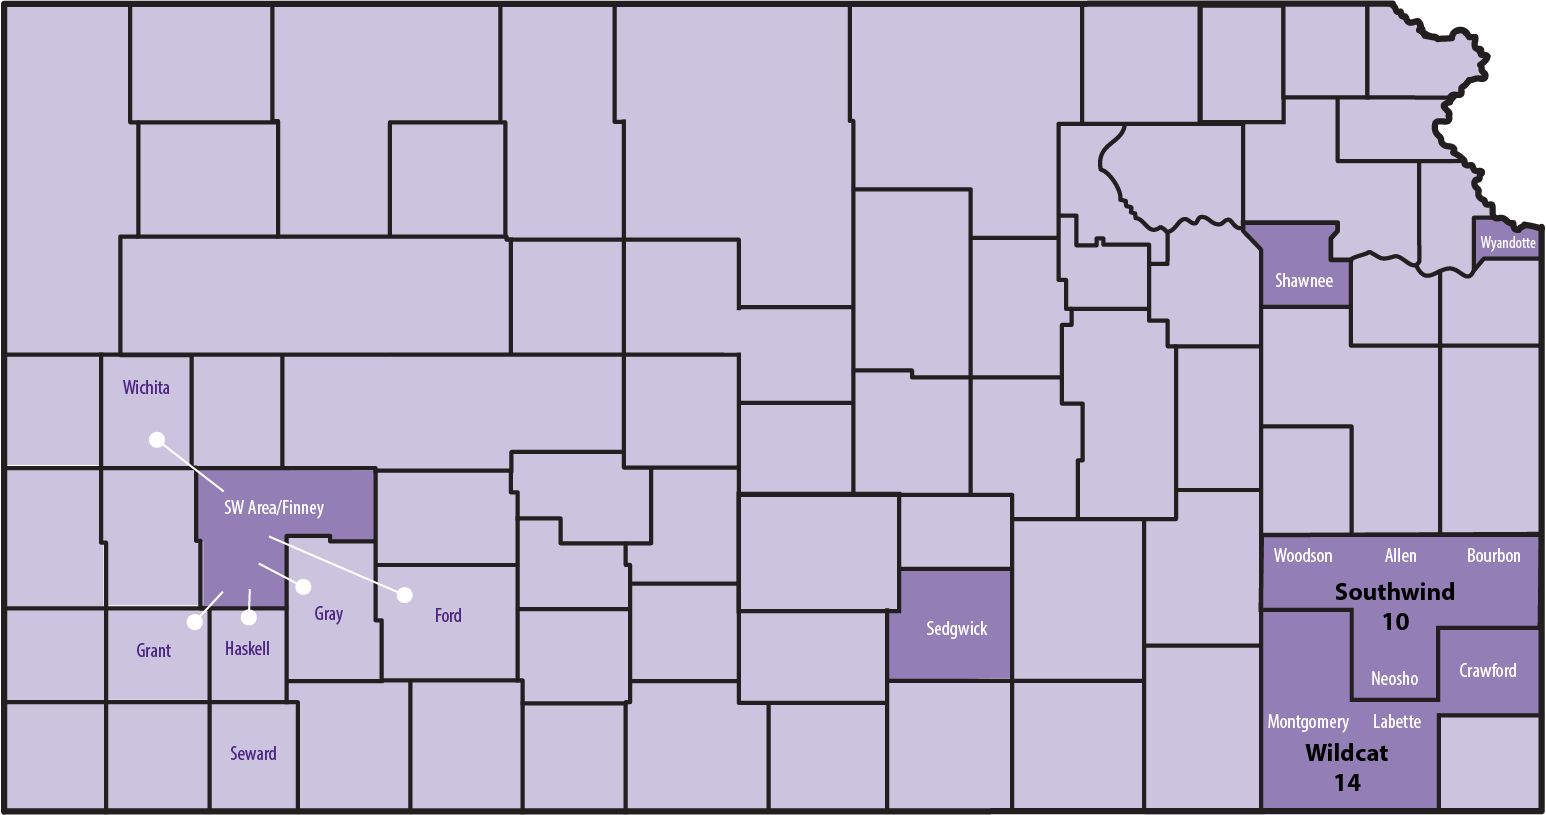 EFNEP counties in Kansas